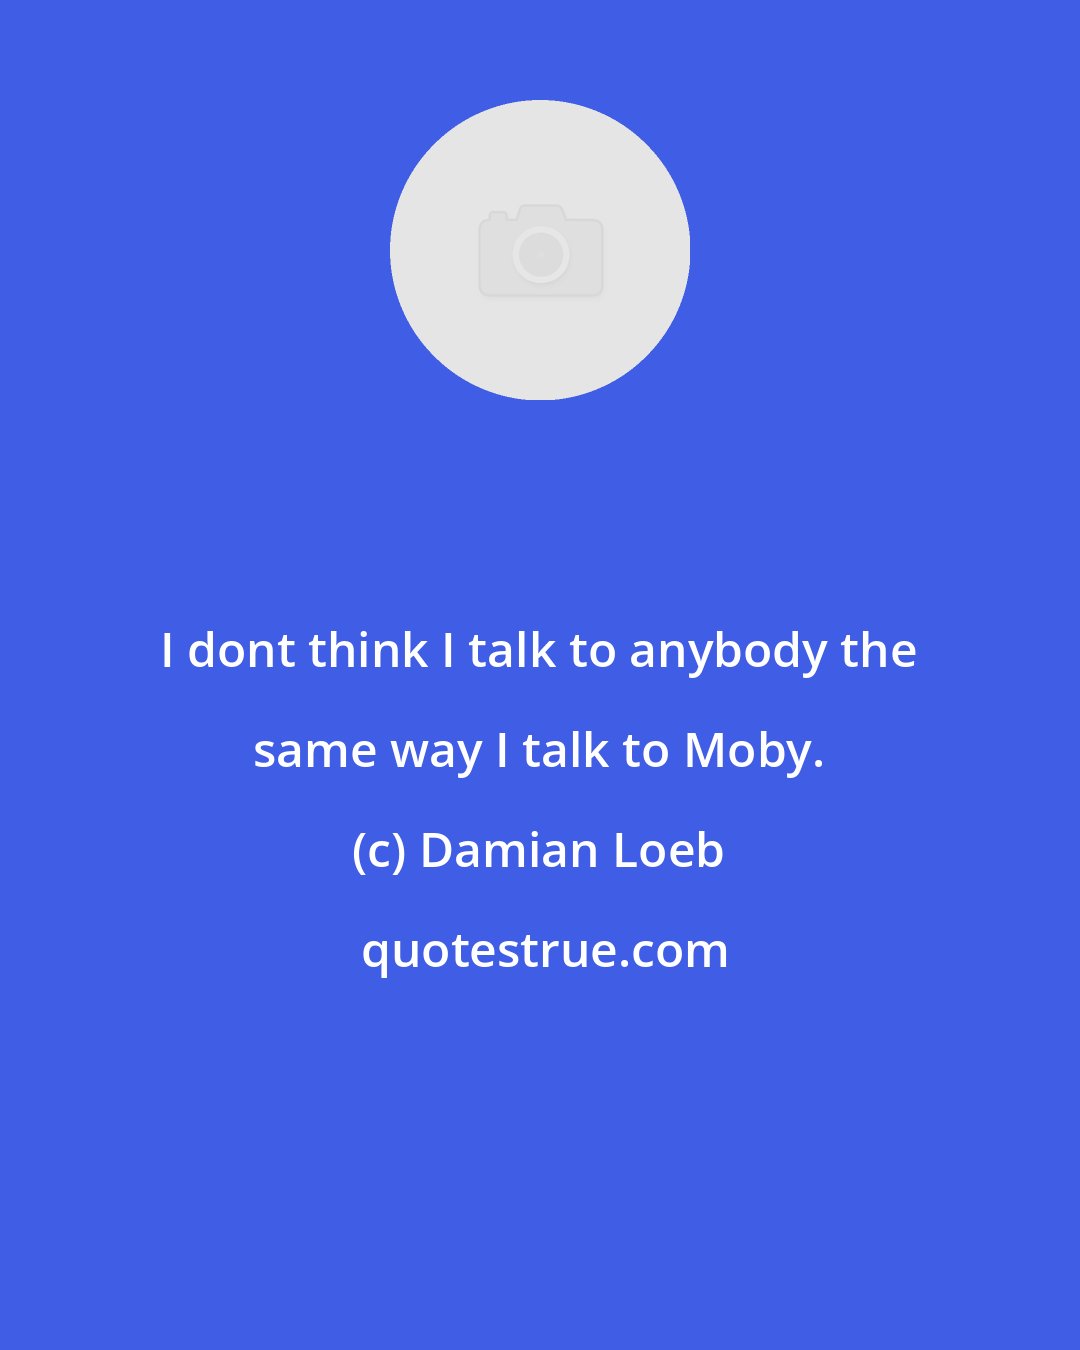 Damian Loeb: I dont think I talk to anybody the same way I talk to Moby.